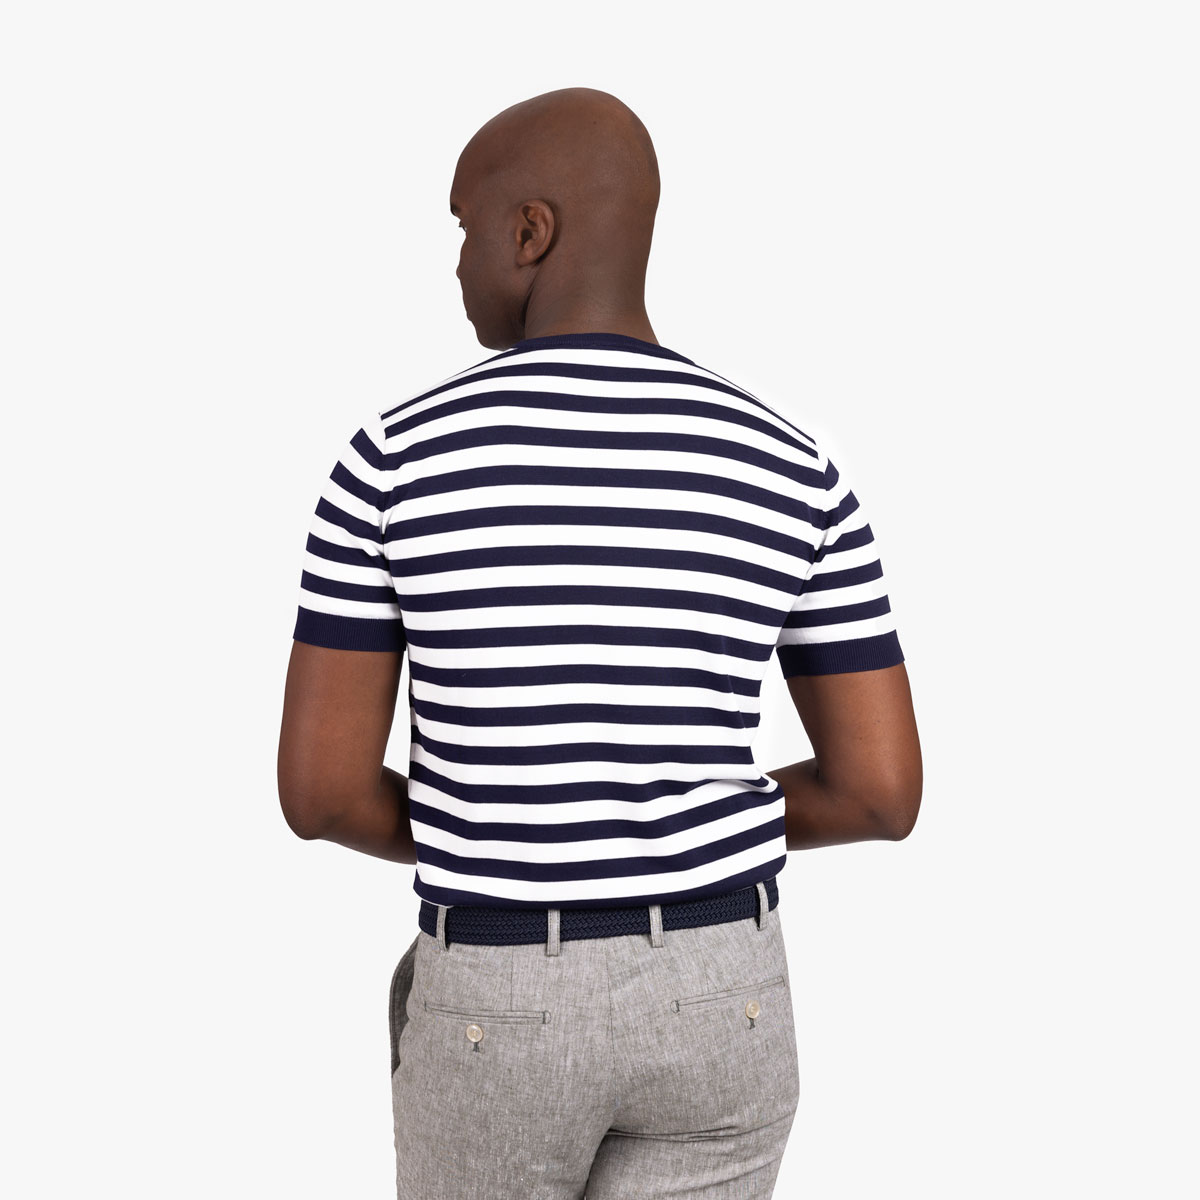 T-Shirt Rundhals mit Streifen in dunkelblau-weiß